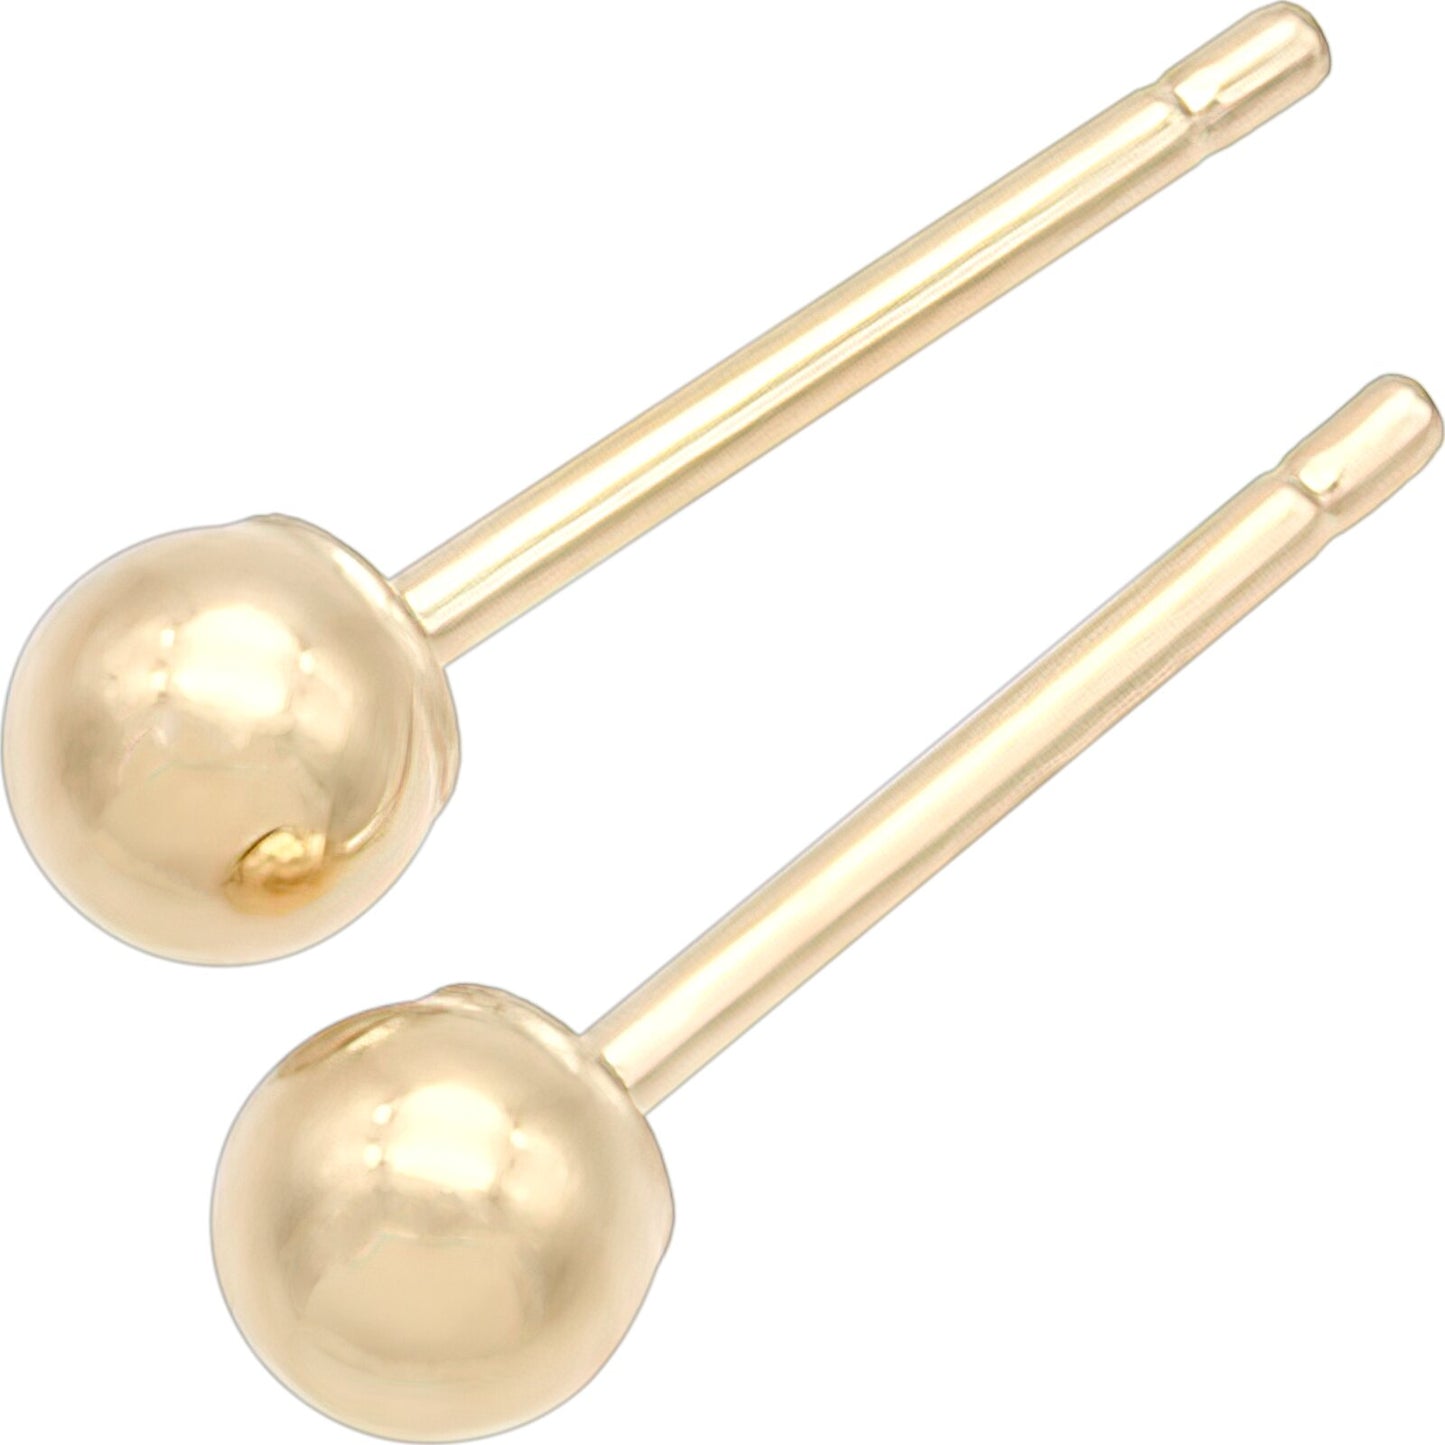 Ball Stud Earrings 14k Gold 3mm